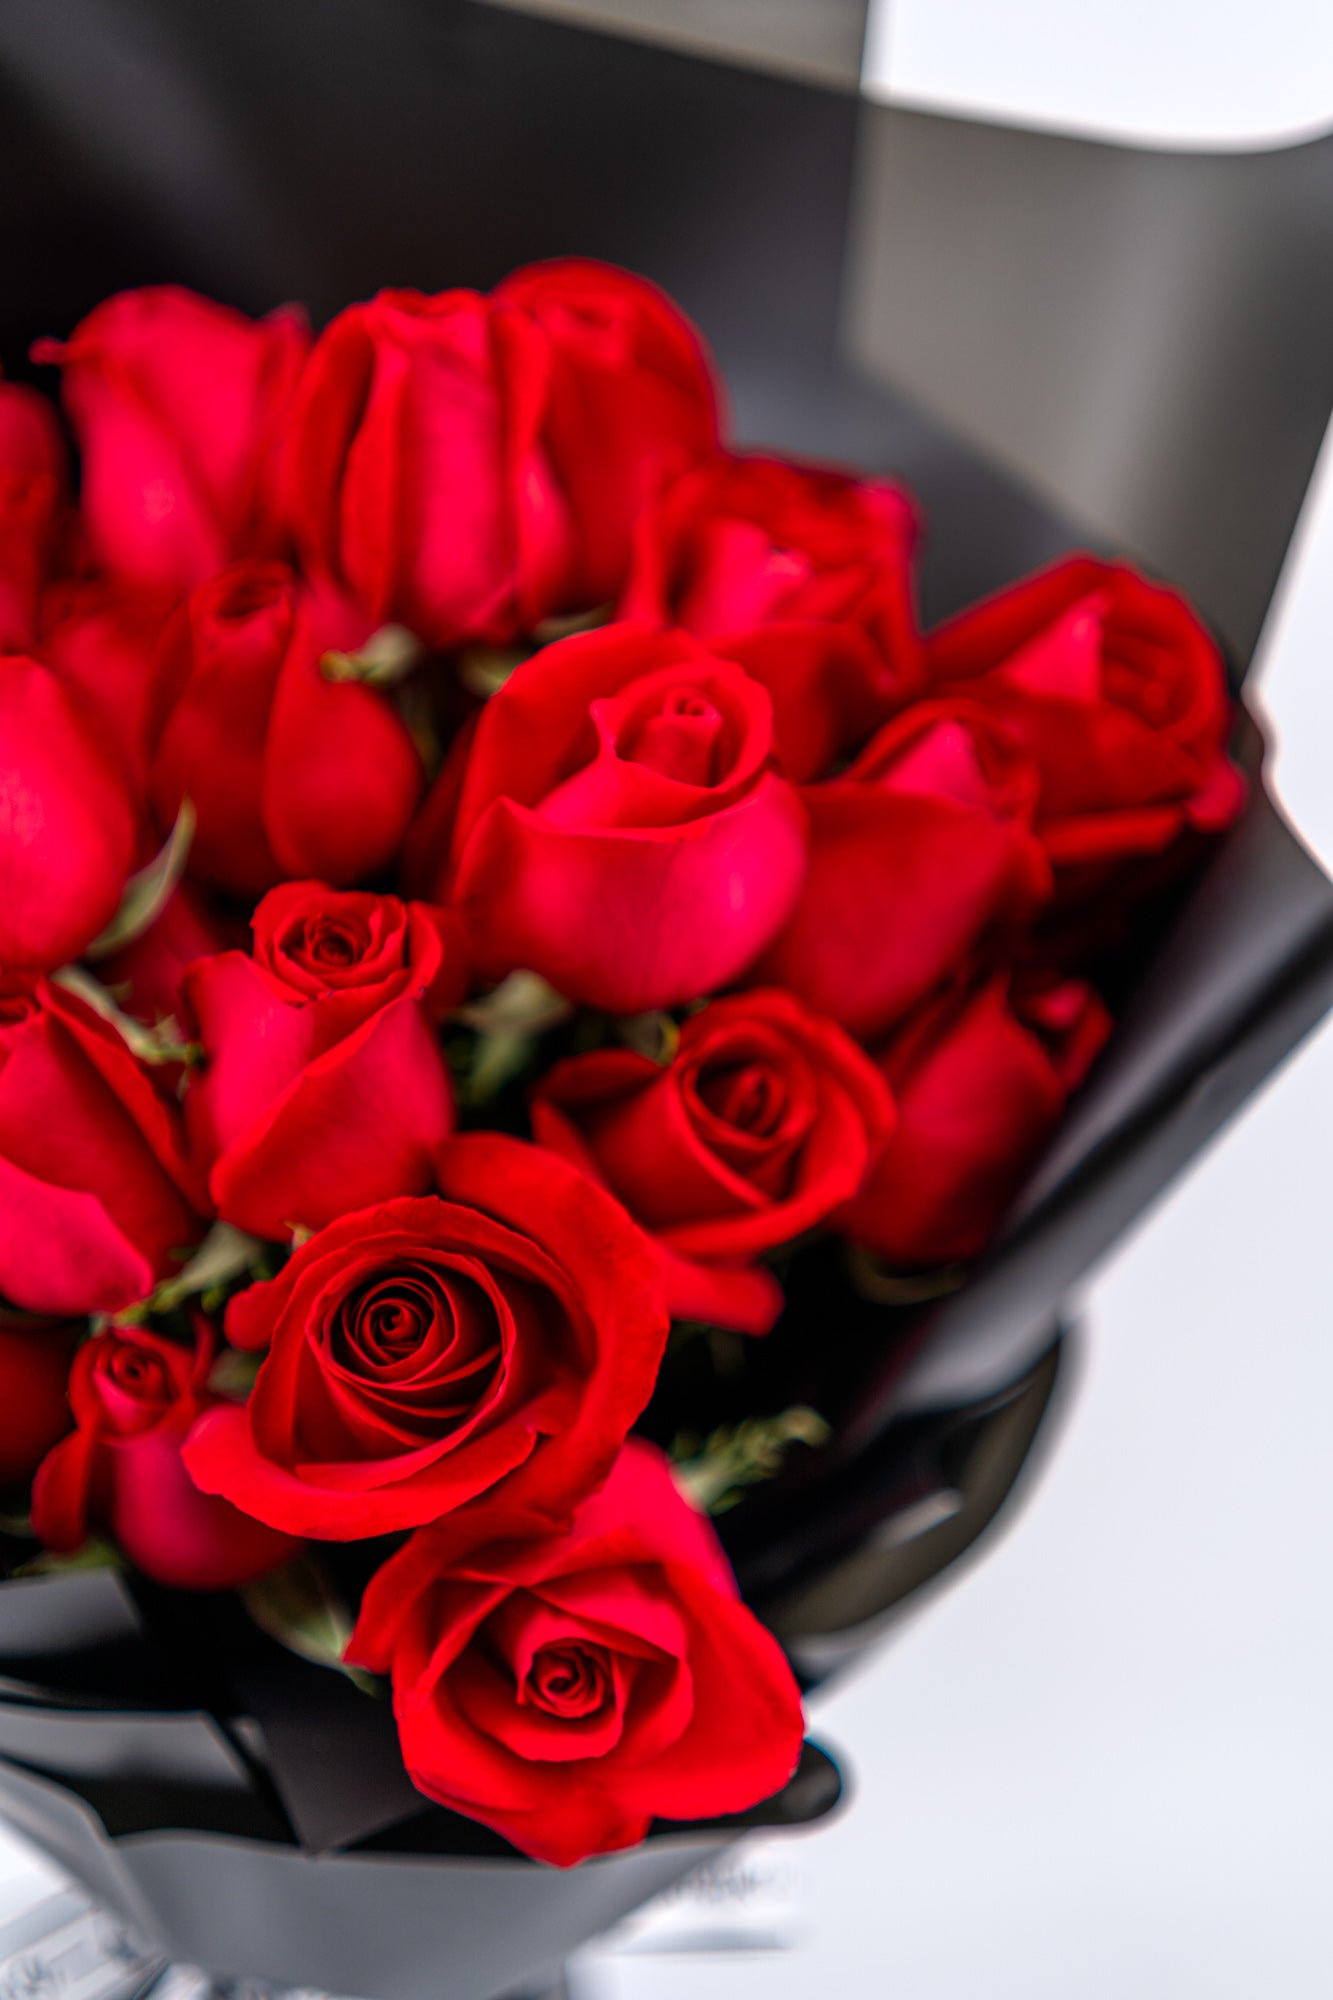 33朵紅色玫瑰花束】訂購33朵紅玫瑰| 價錢$1999 – 一心花店